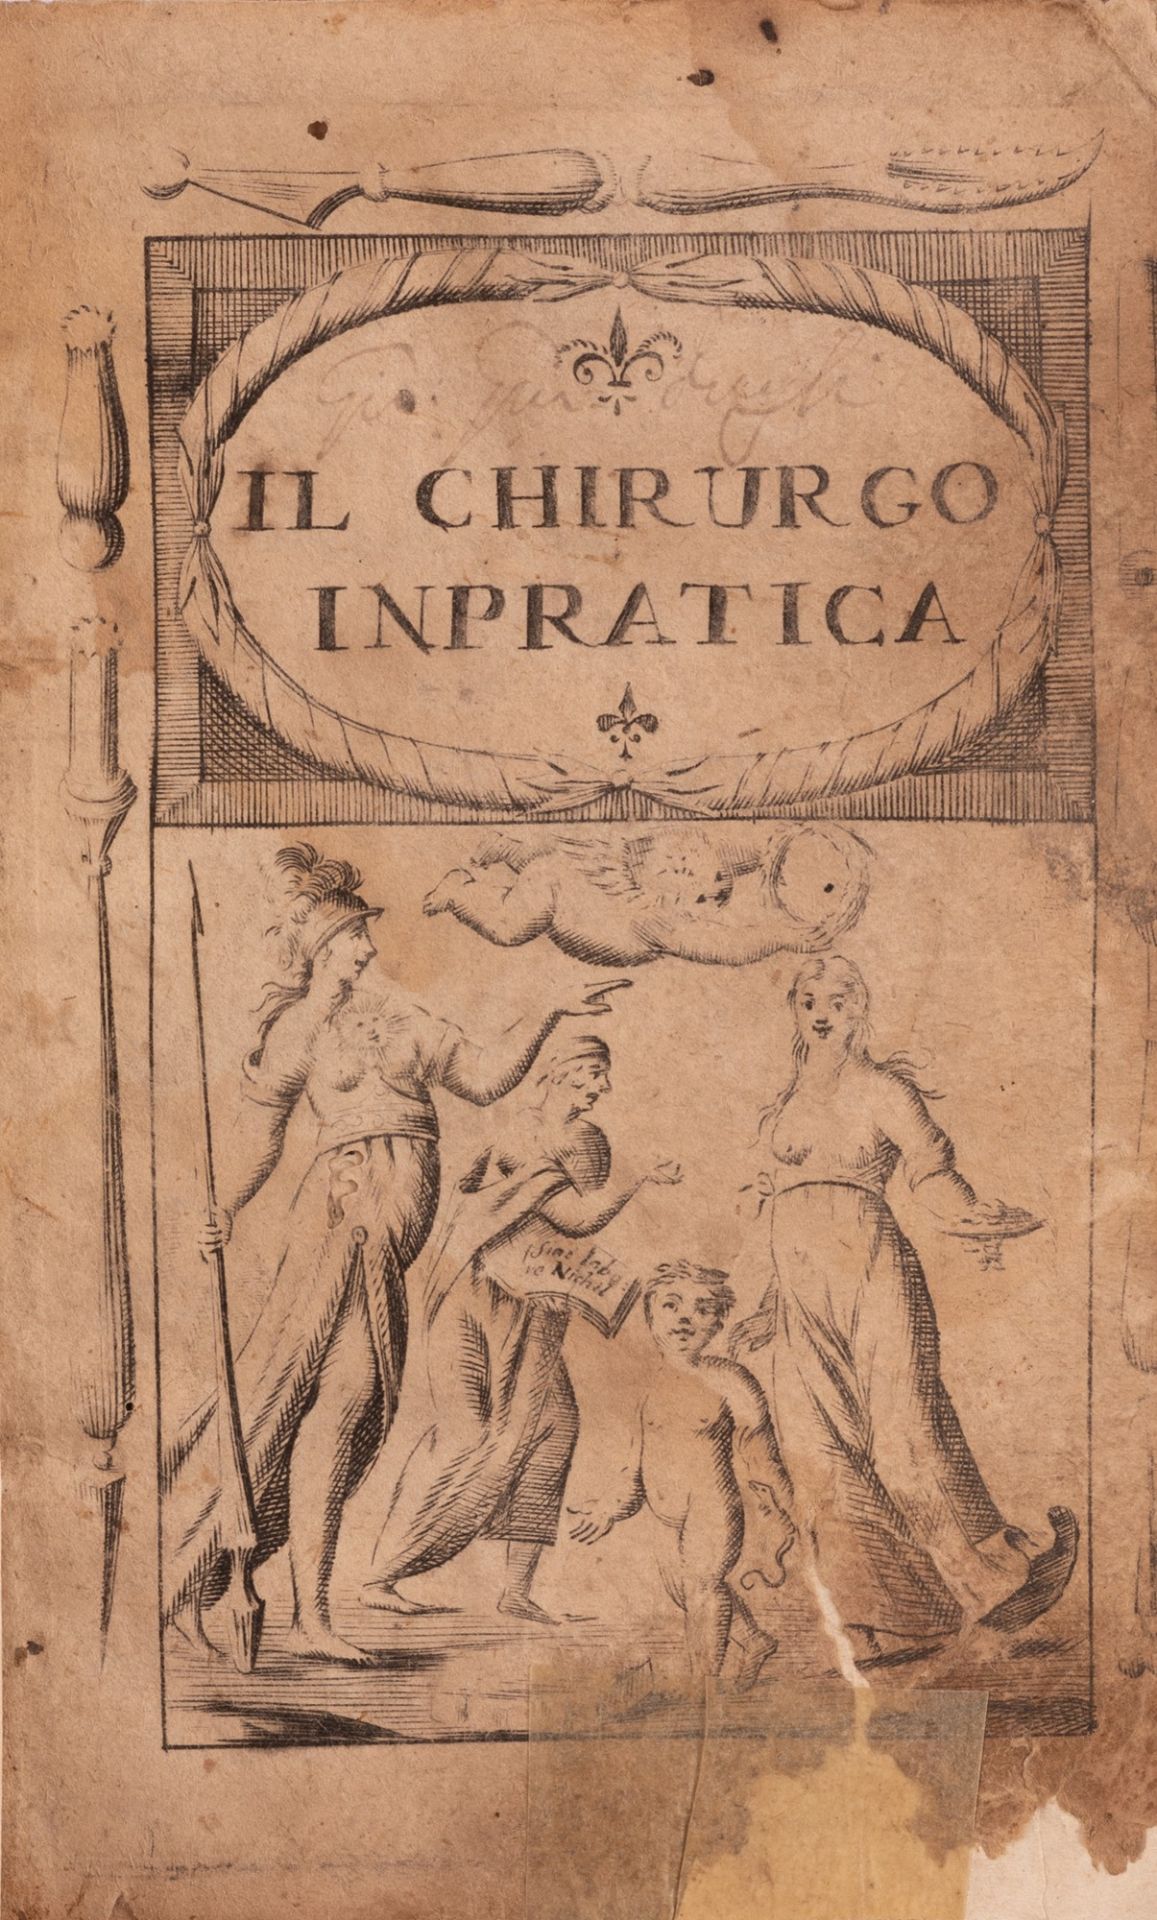 LA CHIRURGIA COMPENDIATA, OVERO INSTRUZIONI PER IL CHIRURGO IN PRATTICA - Image 2 of 3